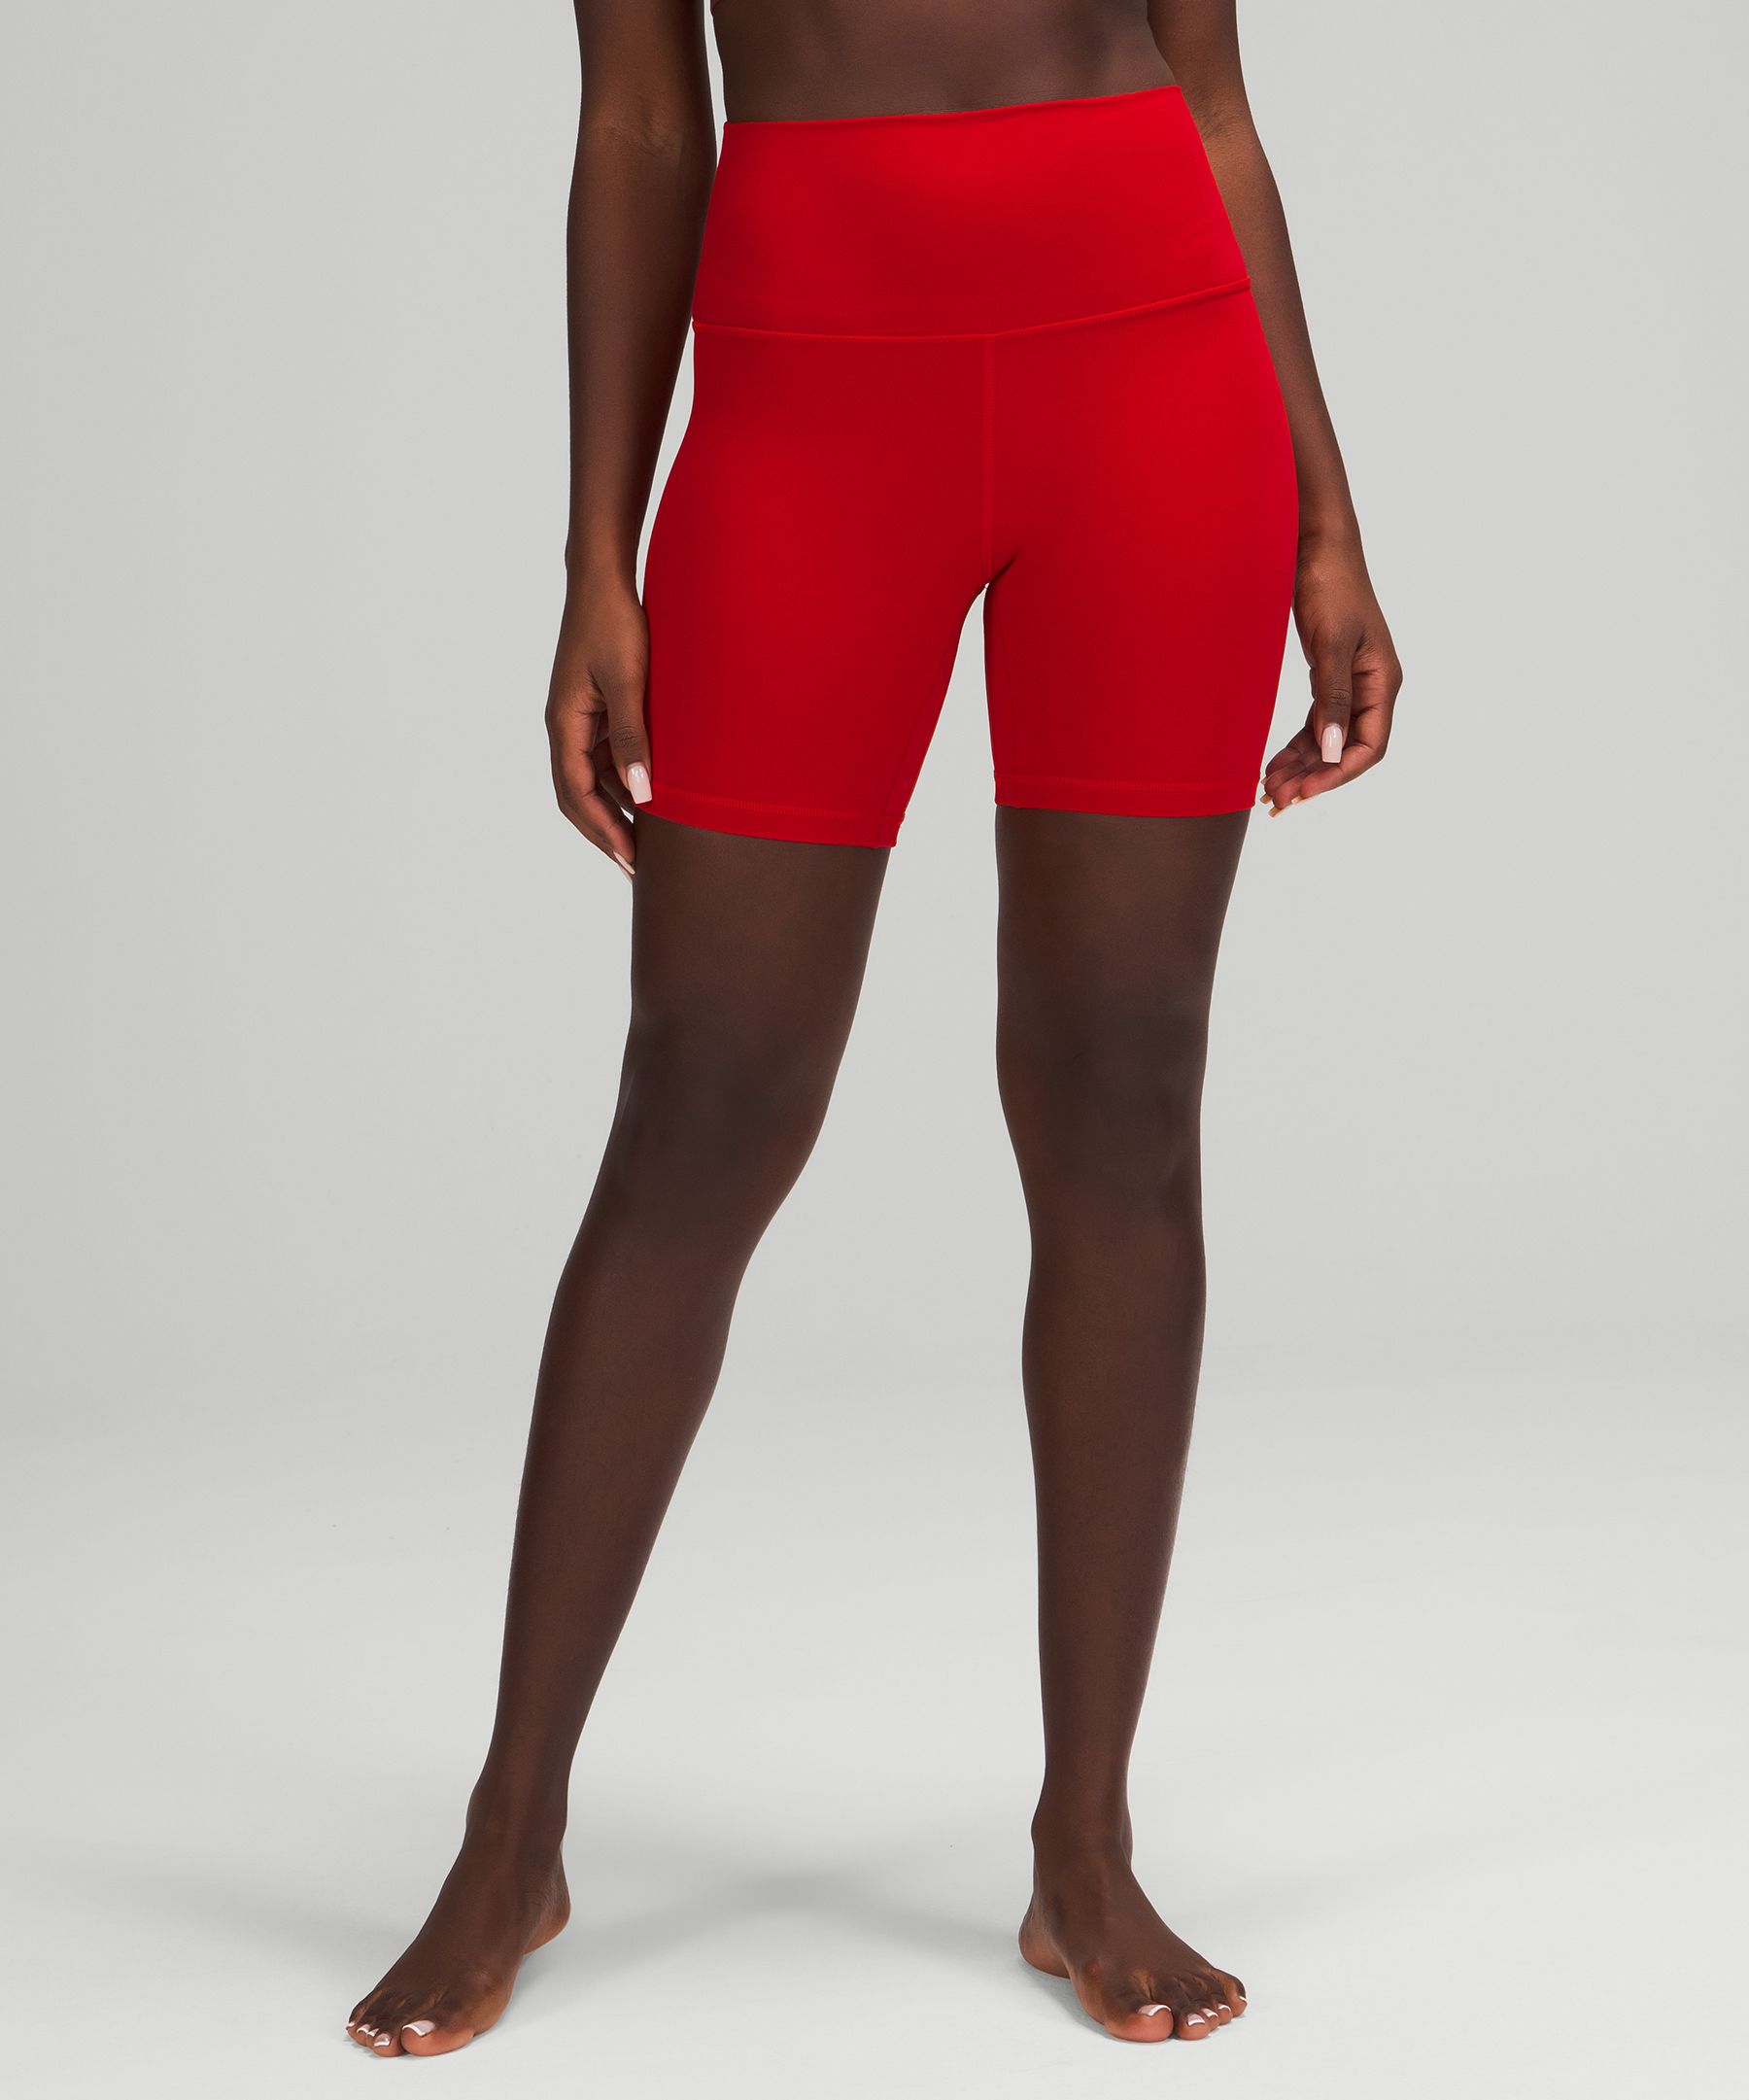 Lululemon Align™ High-rise Shorts 6" In Dark Red